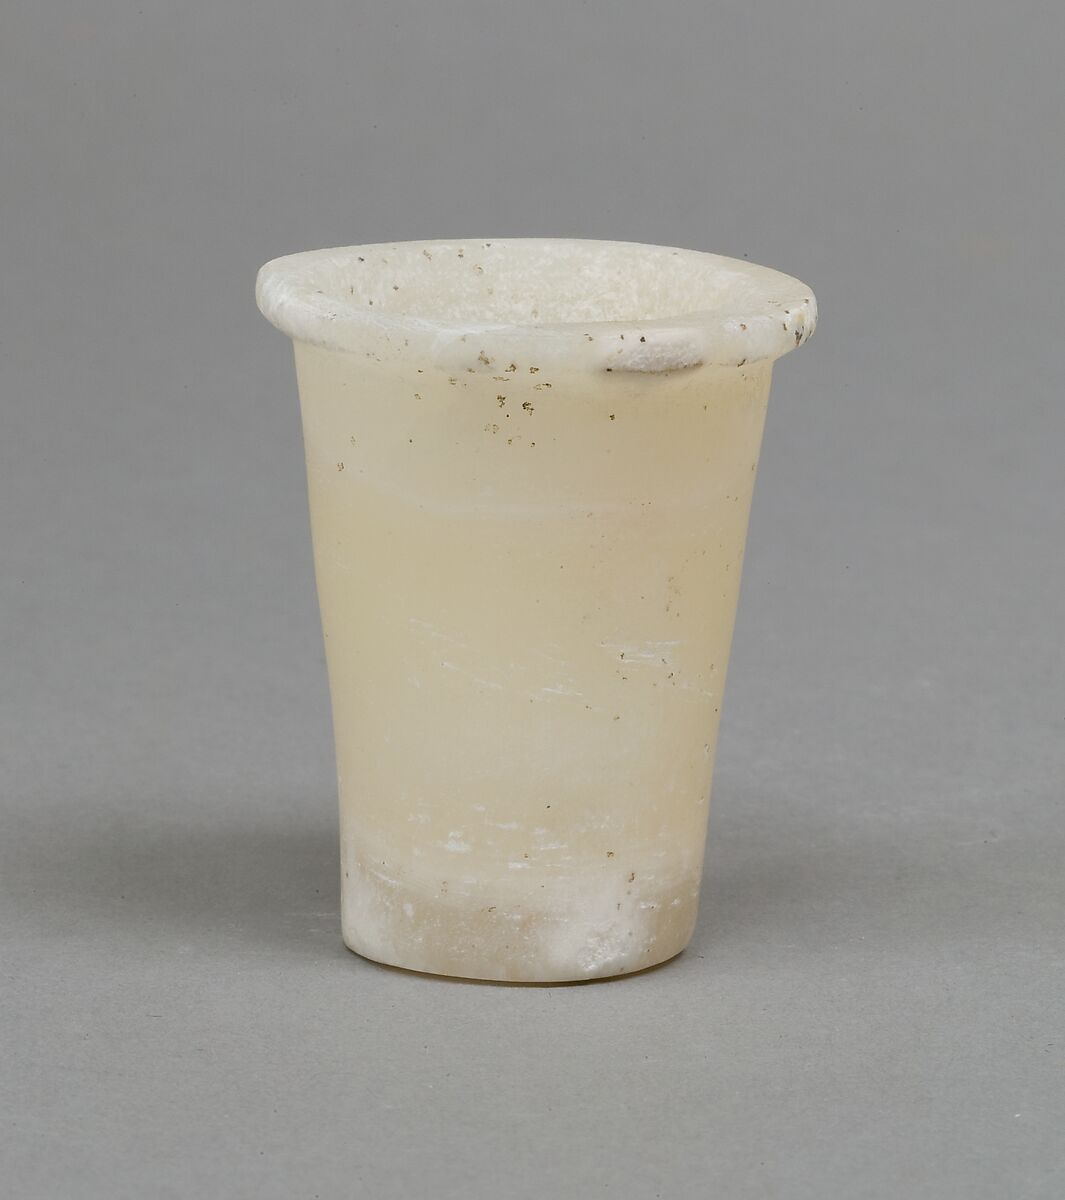 Senwosret (?), Oil jar, Travertine (Egyptian alabaster) 